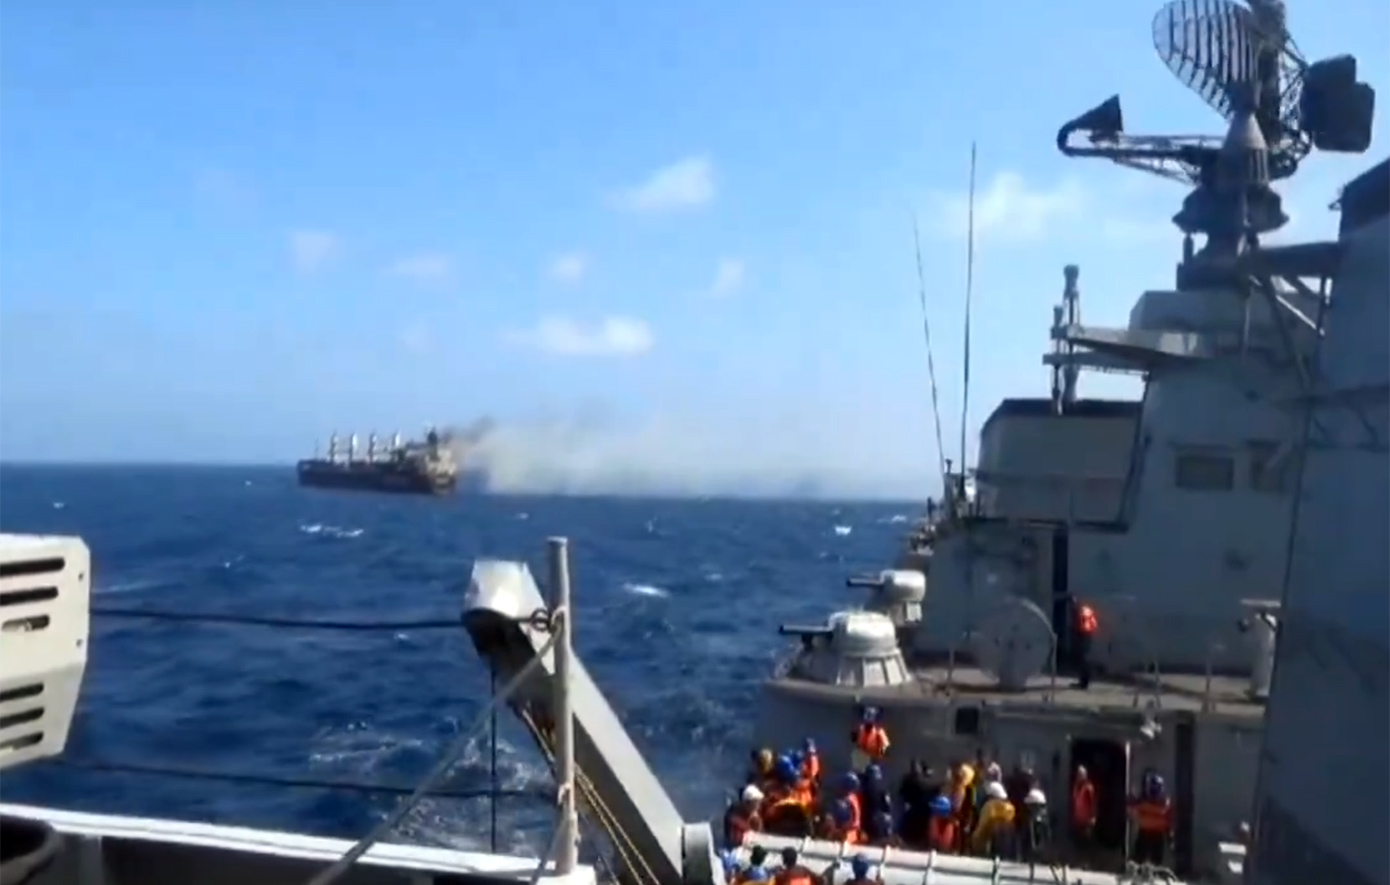 Βίντεο από την επιχείρηση διάσωσης του πληρώματος του πλοίου που χτύπησαν οι Χούθι στην Ερυθρά Θάλασσα